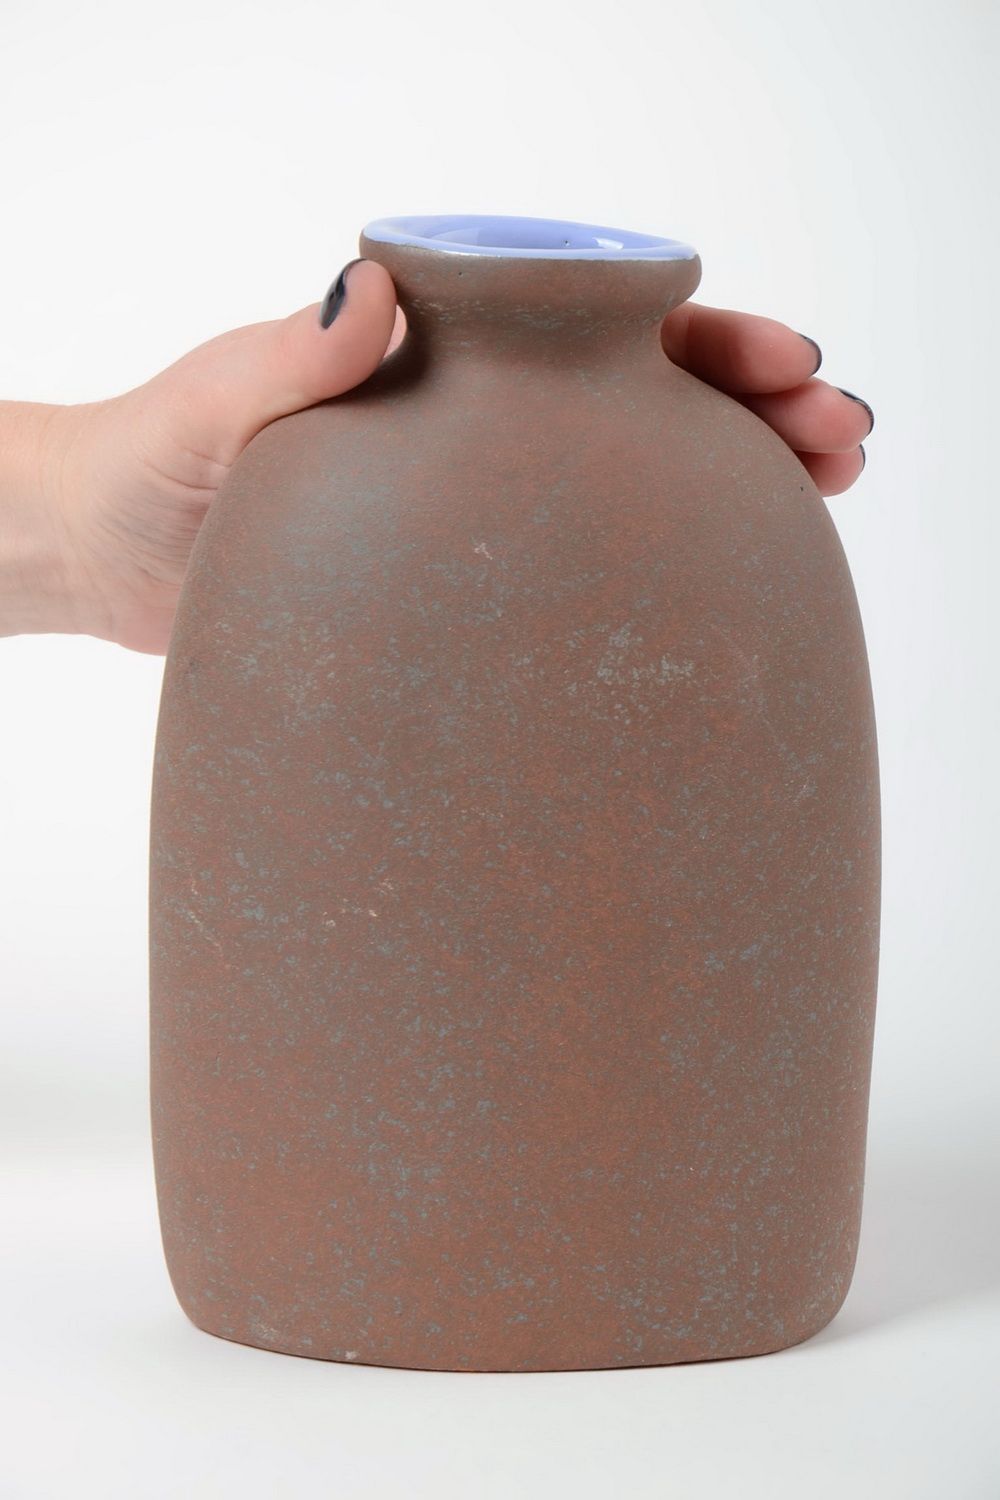 Originelle Vase handmade aus Halbporzellan mit Pigmenten bemalt 1 L für Blumen  foto 5